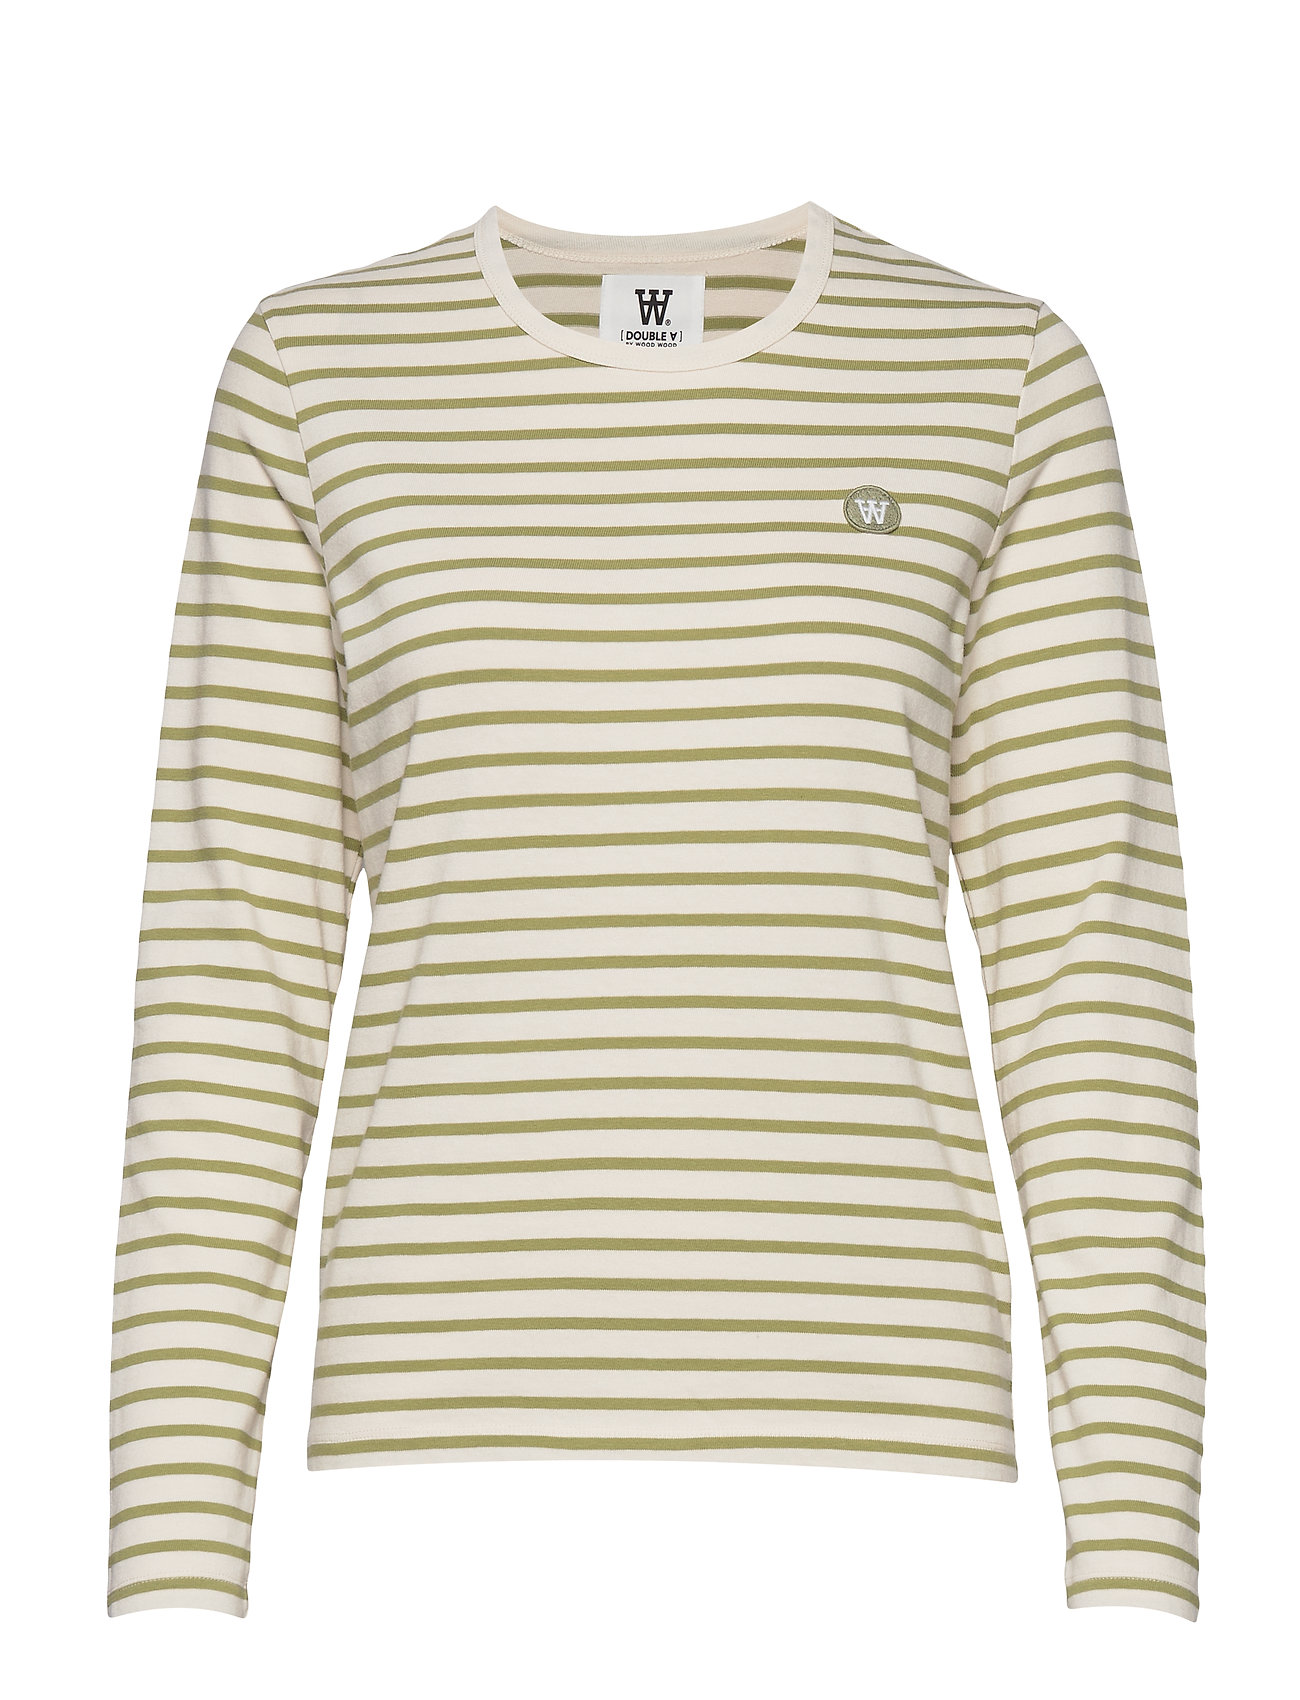 Moa Long Sleeve Langærmet T-shirt Creme Wood langærmede t-shirts & toppe fra Wood Wood til dame i OFF-WHITE/OLIVE STRIPES - Pashion.dk